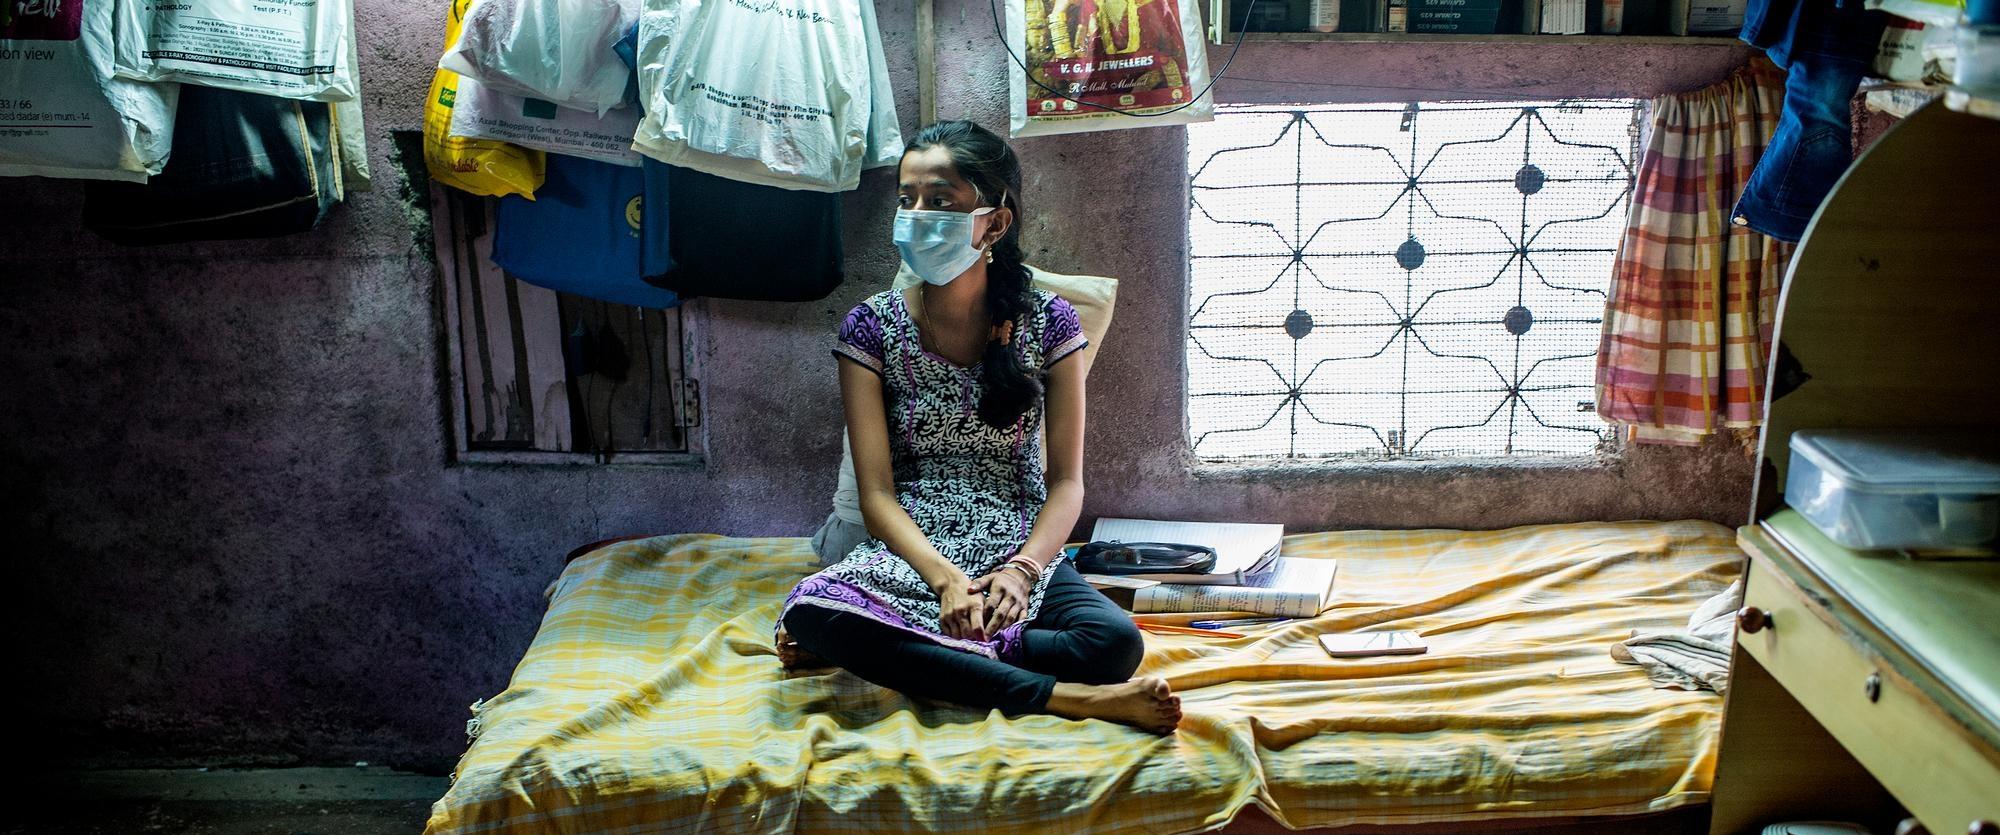 Une patiente souffrant de tuberculose ultrarésistante, dans la région d'Ambedkar Nagar à Mumbai.